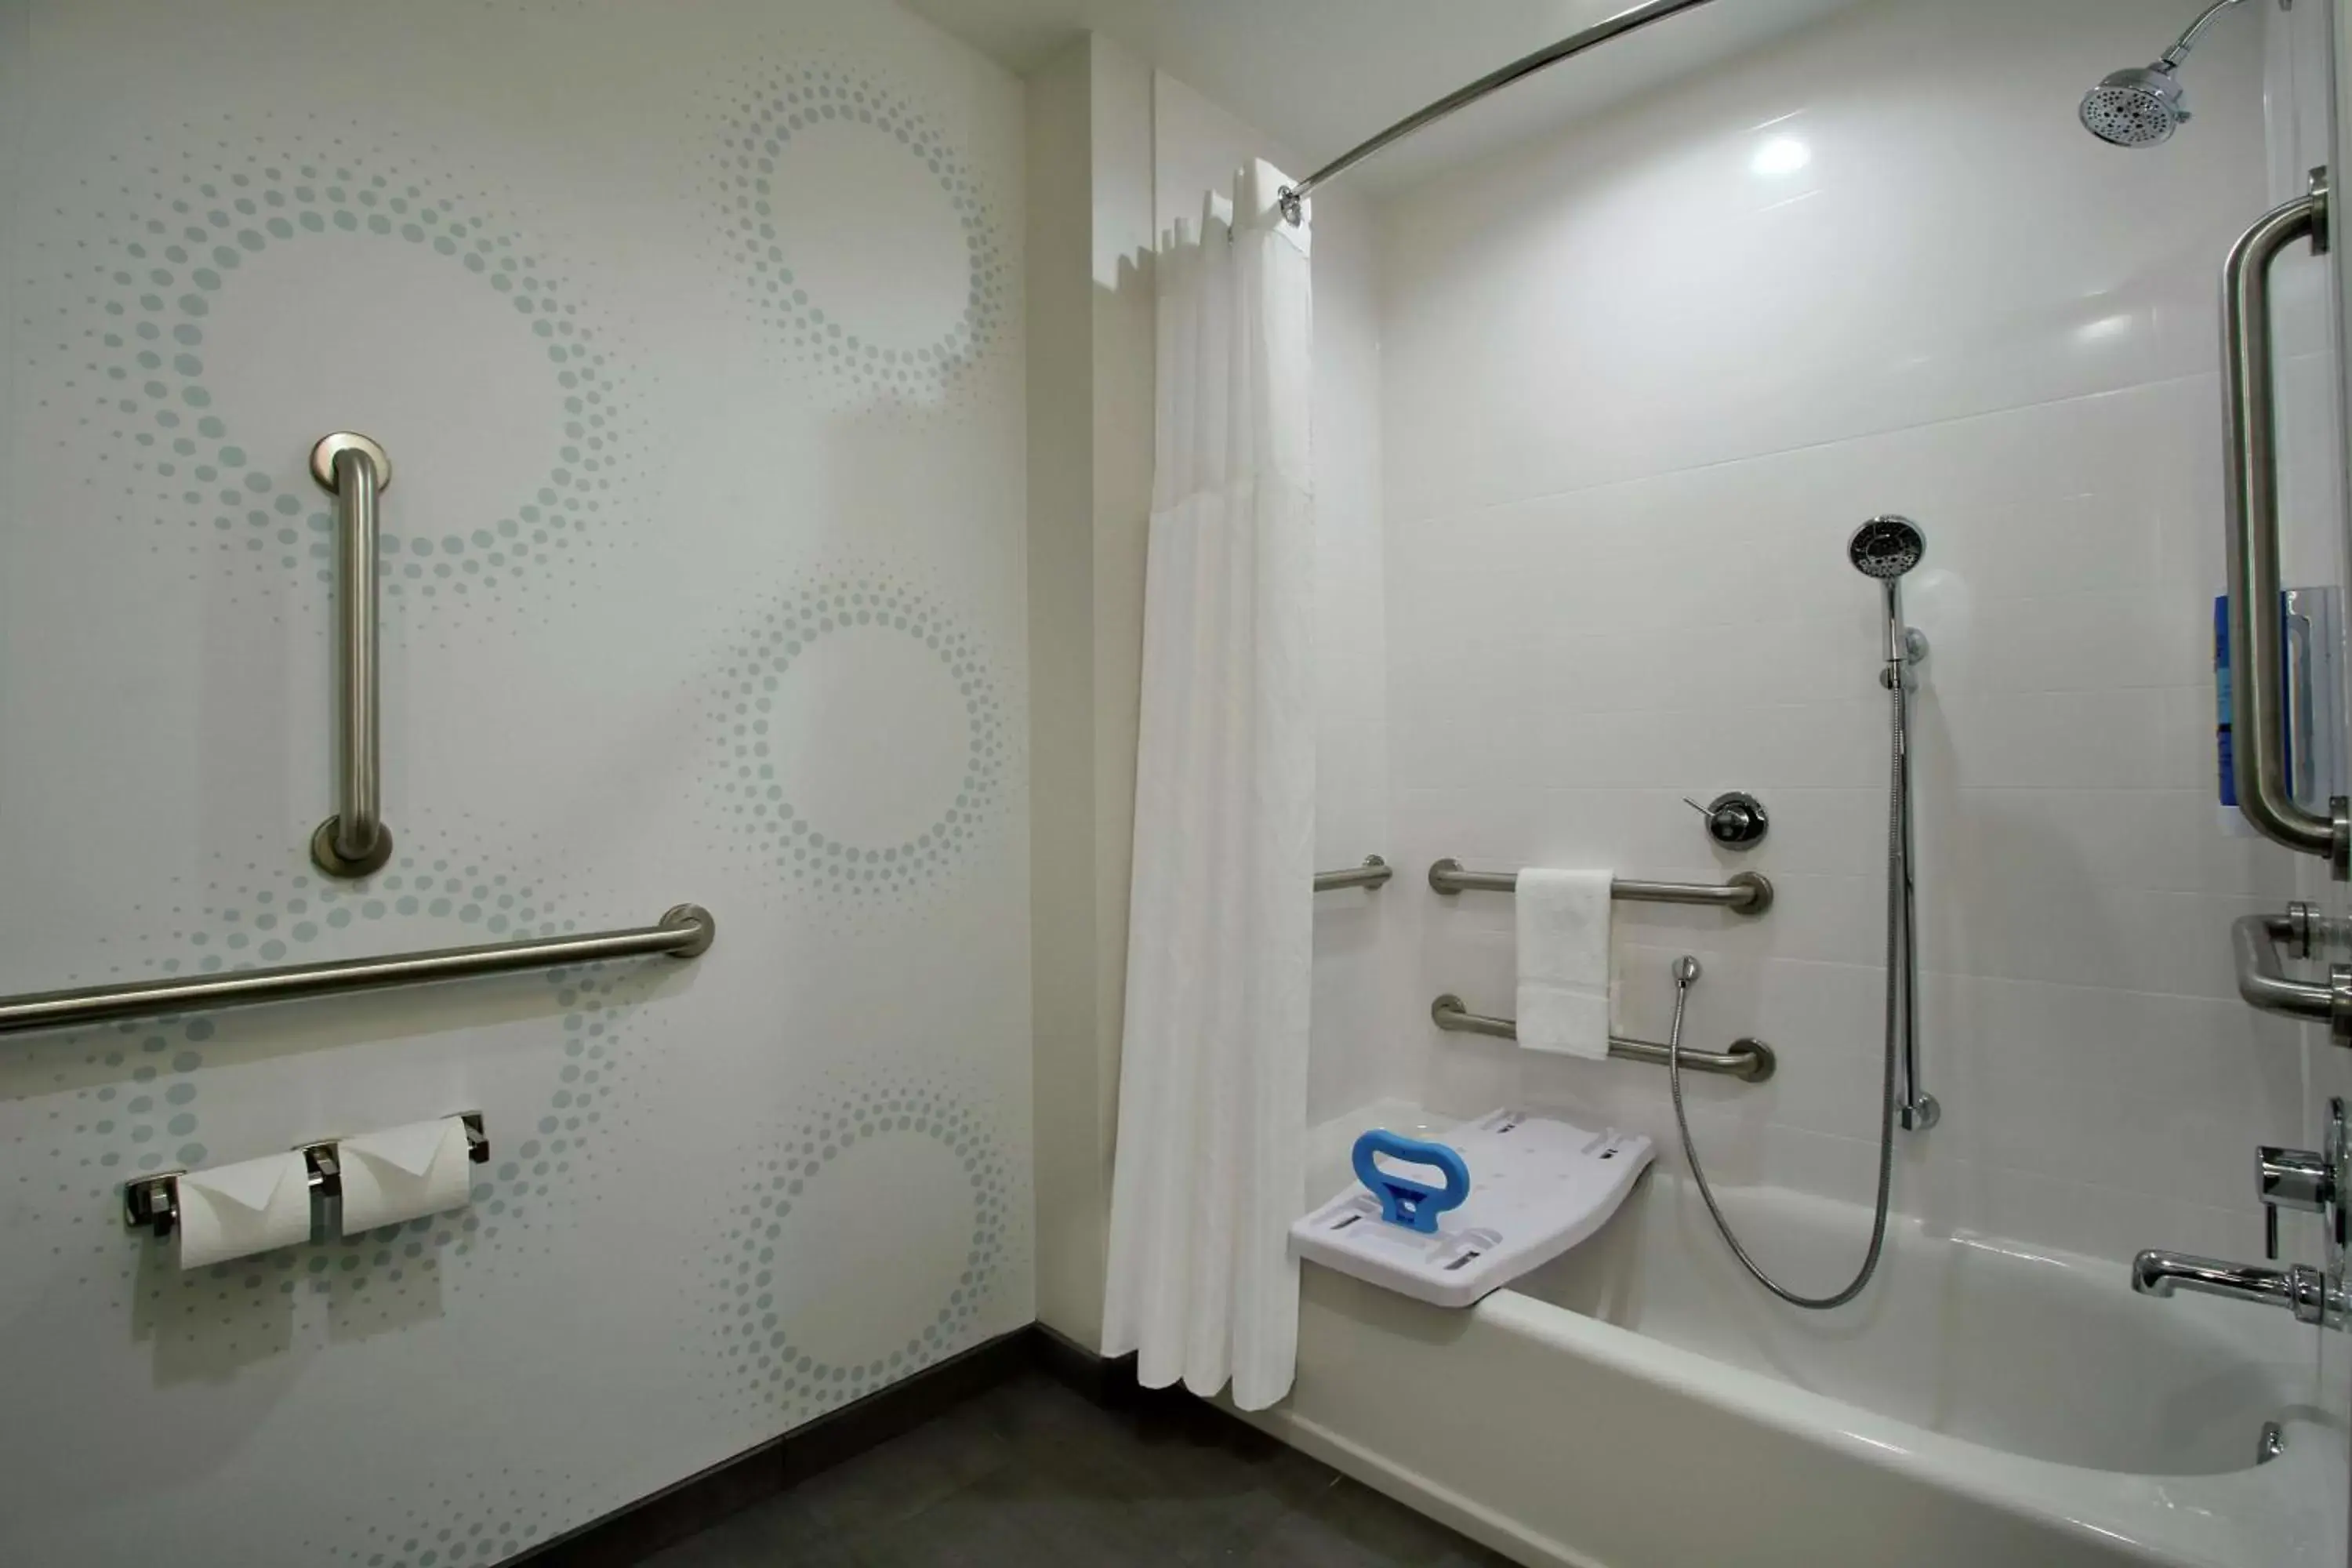 Bathroom in Tru By Hilton Waco South